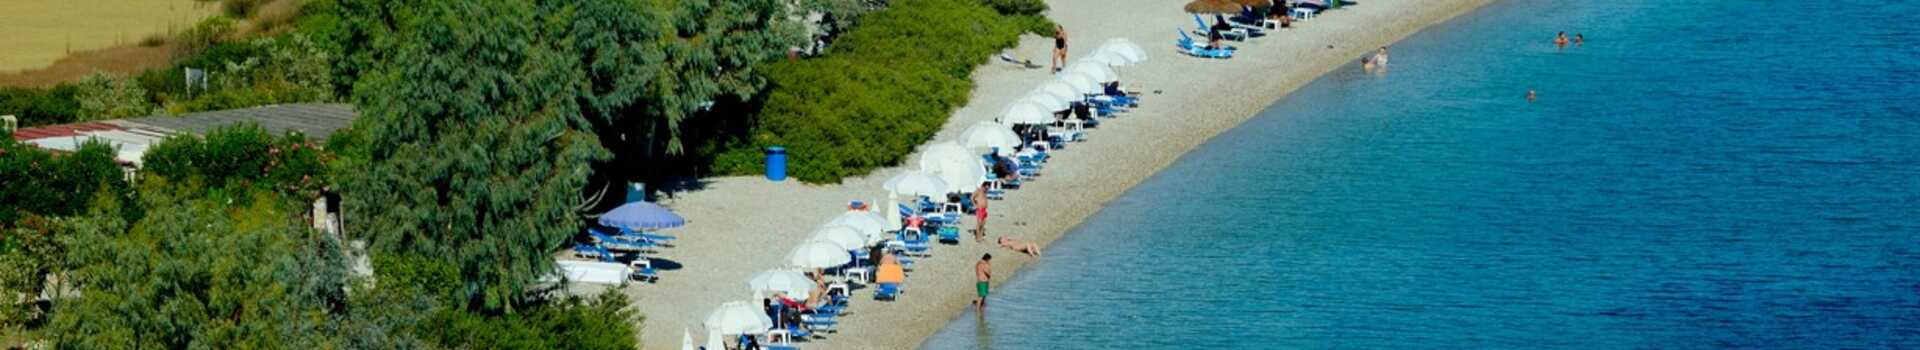 Řecko, Alonissos, Pláž Dimitris (1)